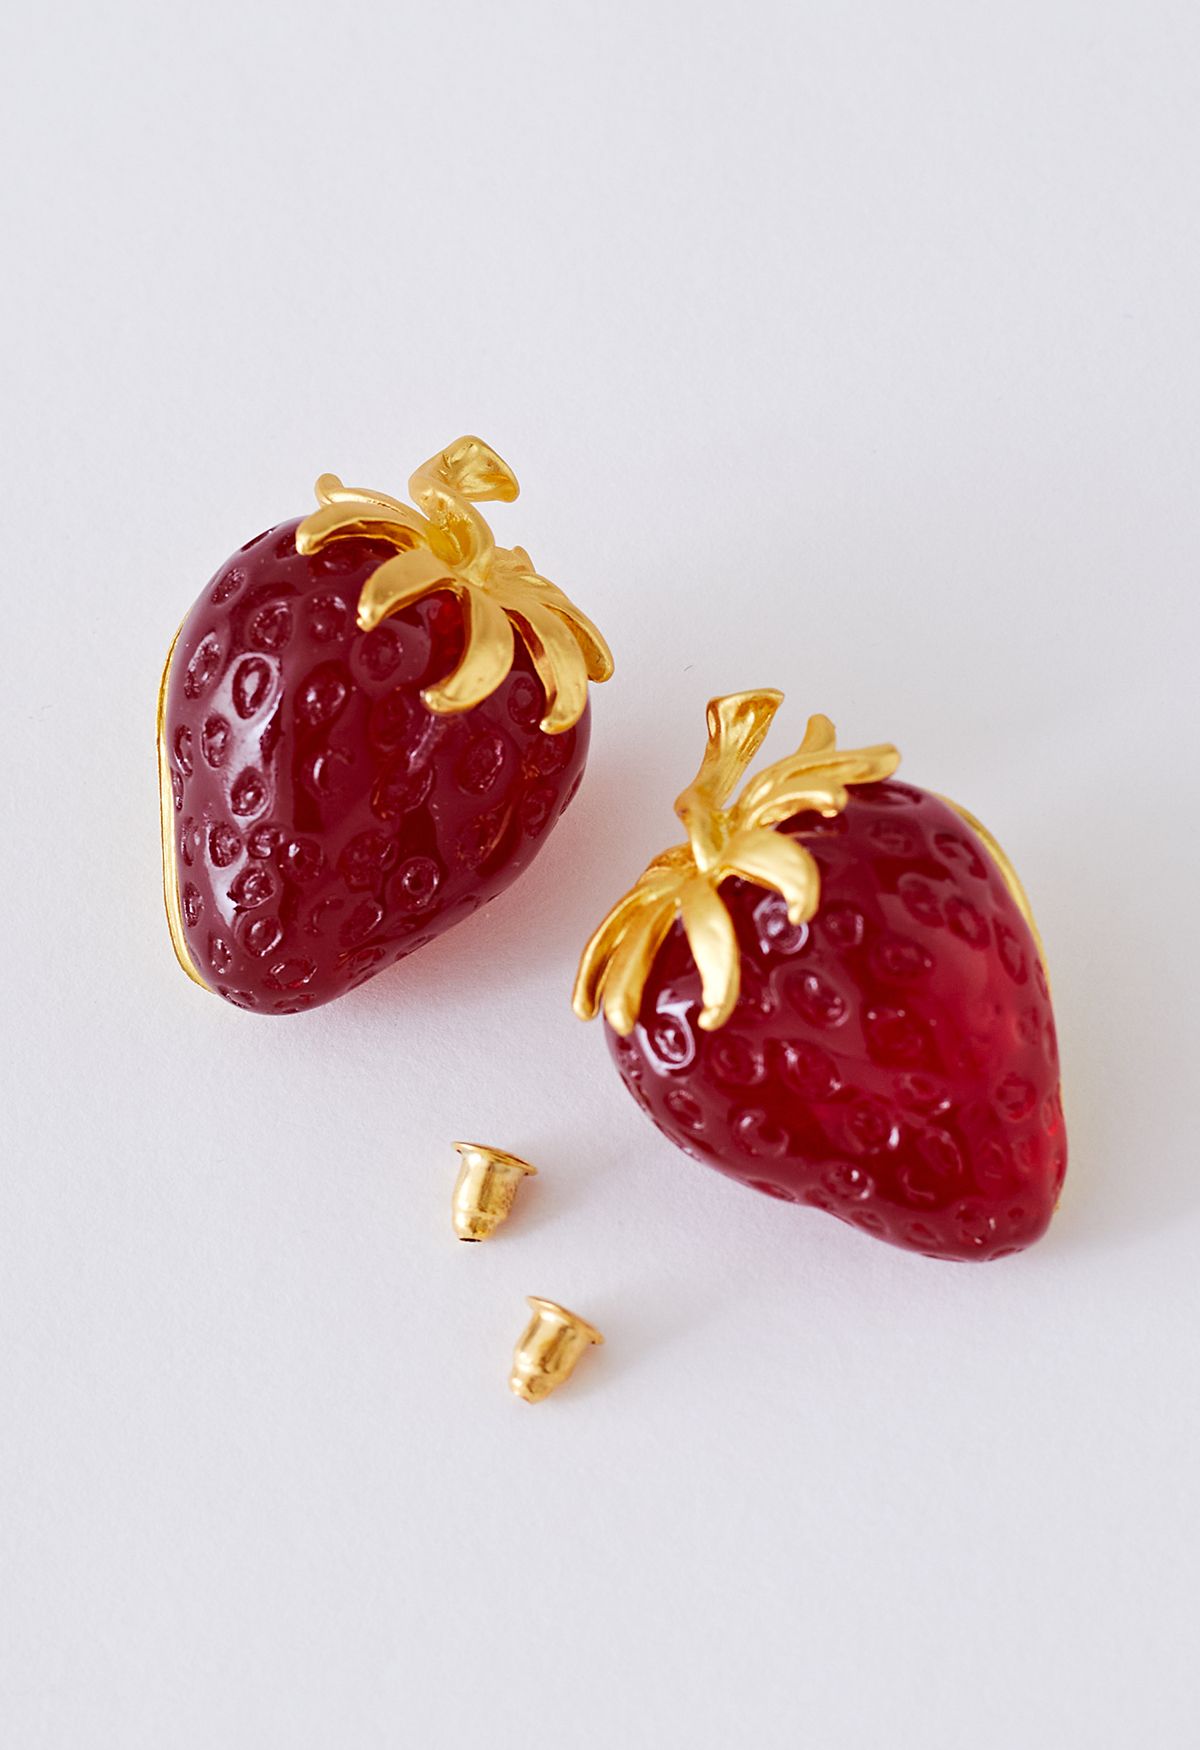 3D Red Strawberry Resin Earrings